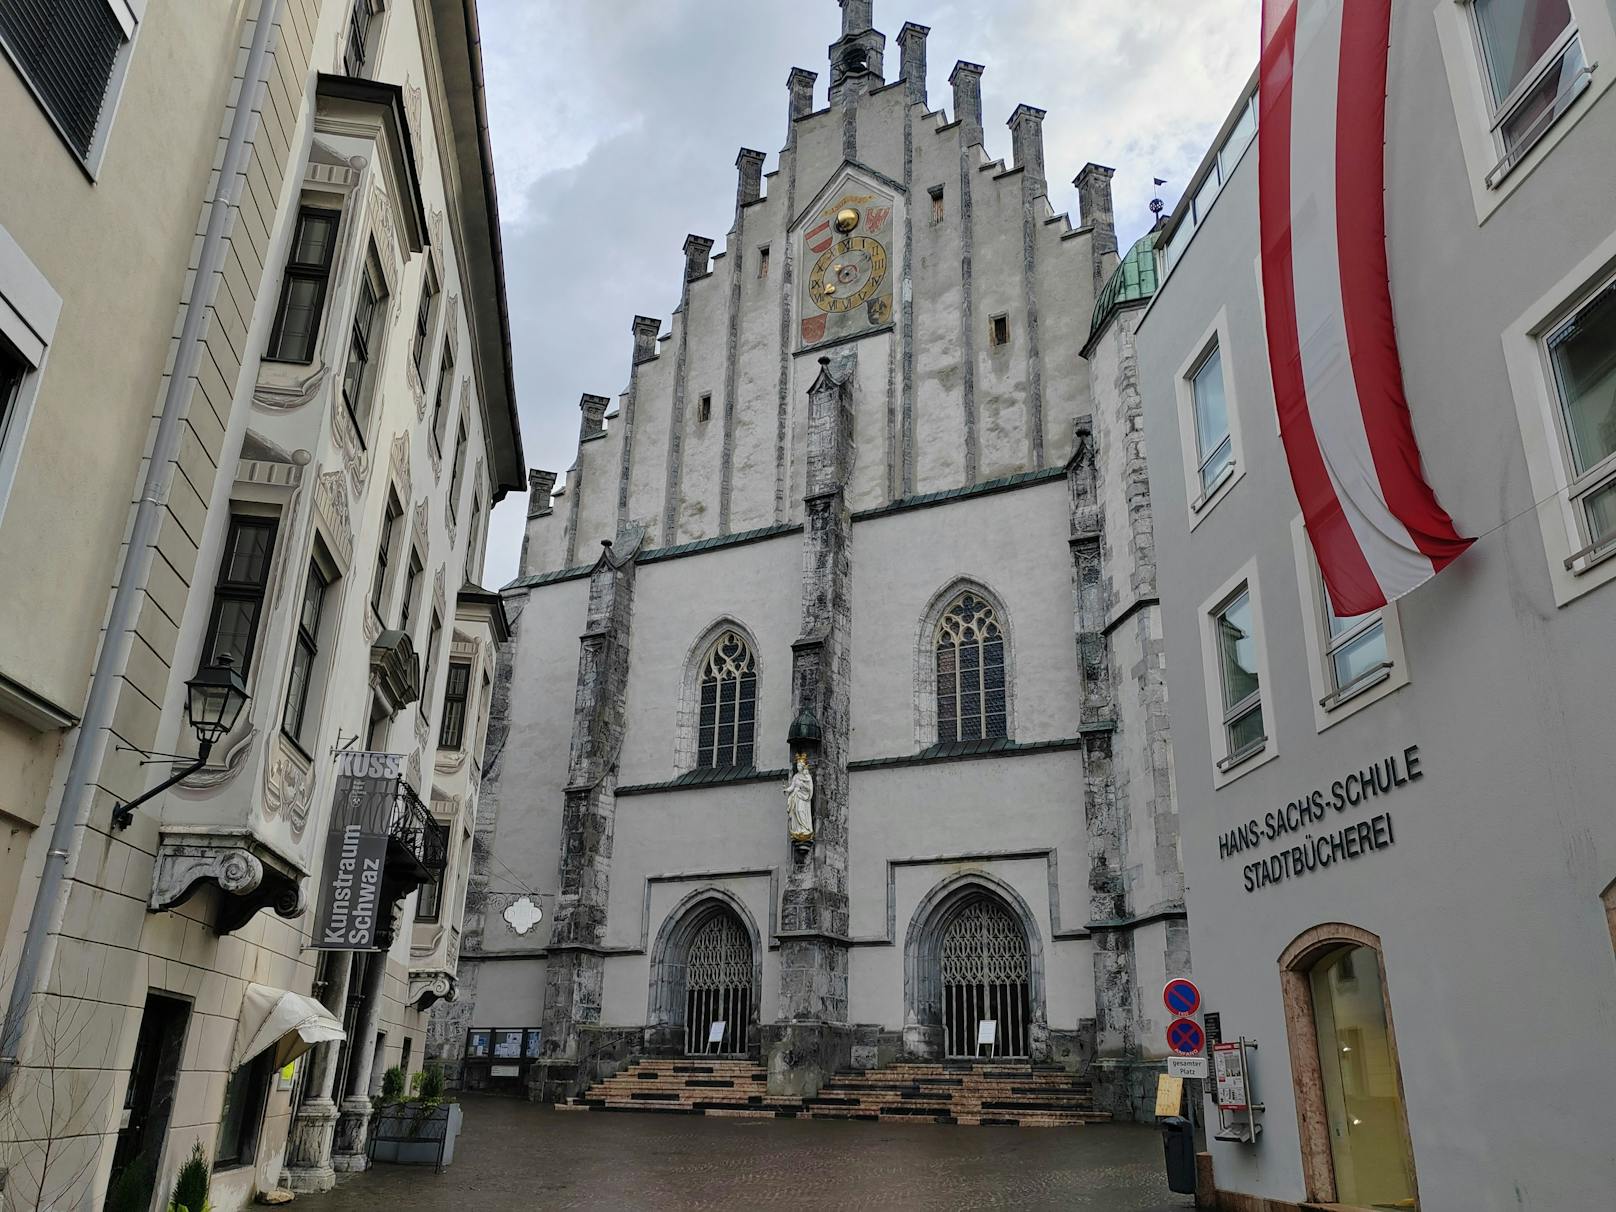 Am 28. April verunstaltete eine bislang unbekannte Täterschaft den Innenraum der Pfarrkirche "Maria Himmelfahrt" in Schwaz durch Graffiti. Der Steinboden vor dem Altar sowie ein Beichtsuhl wurde mittels blauem Lackspray besprüht.